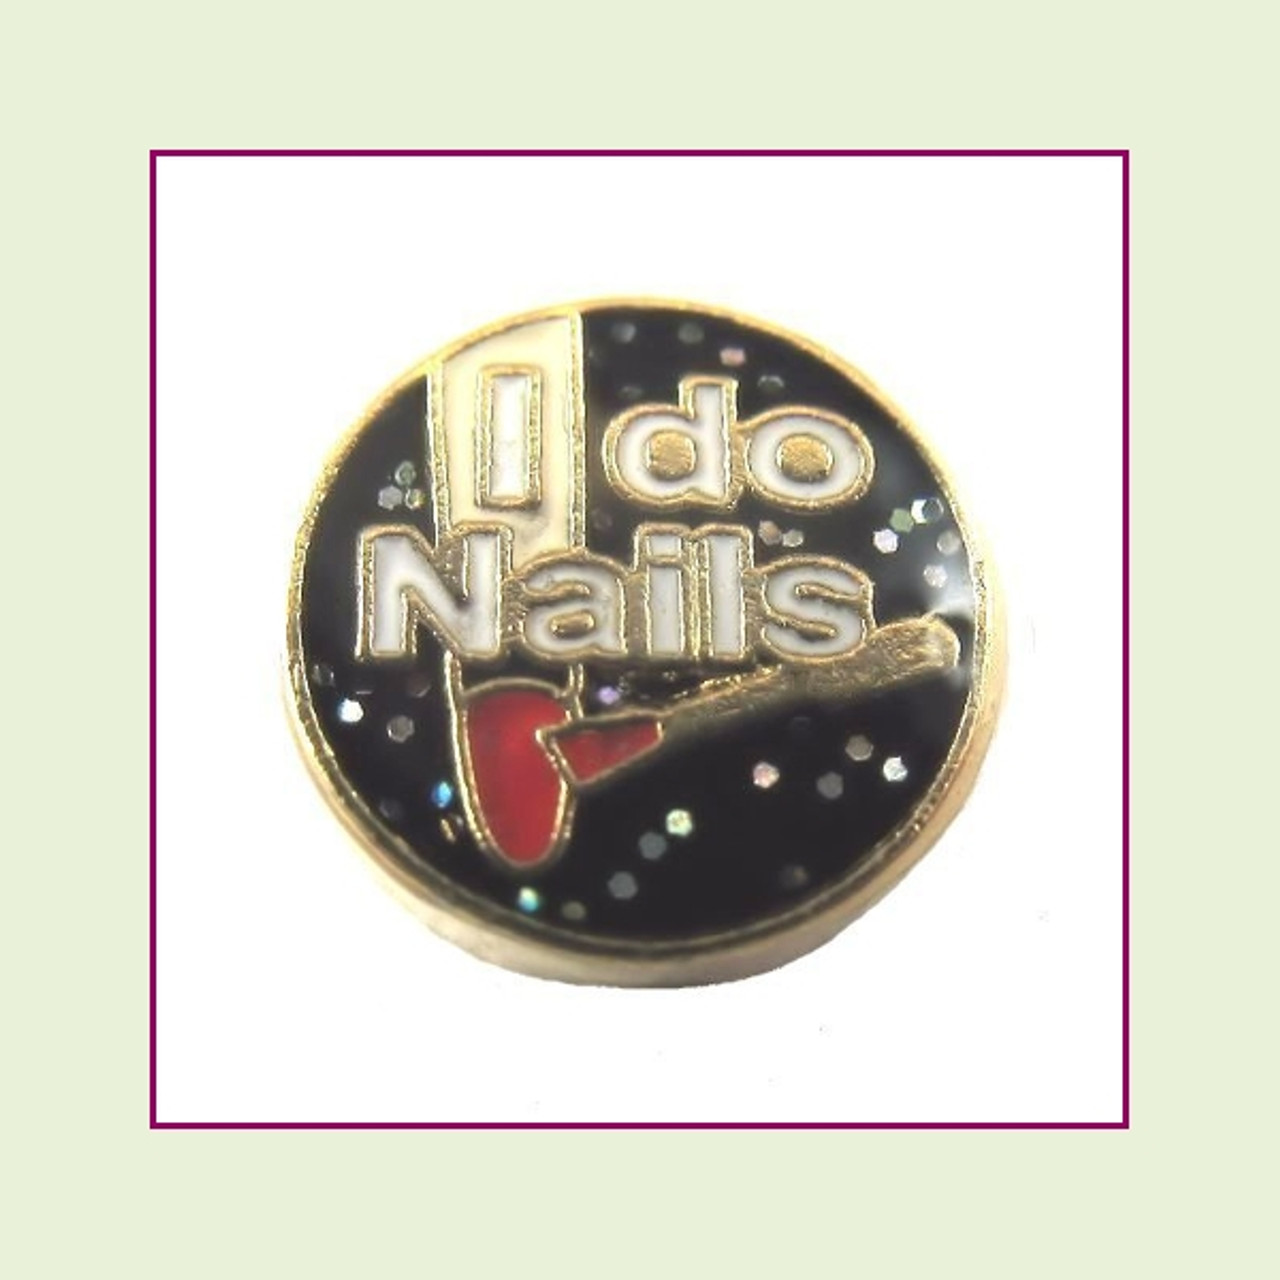 I Do Nails (Gold Base) Floating Charm